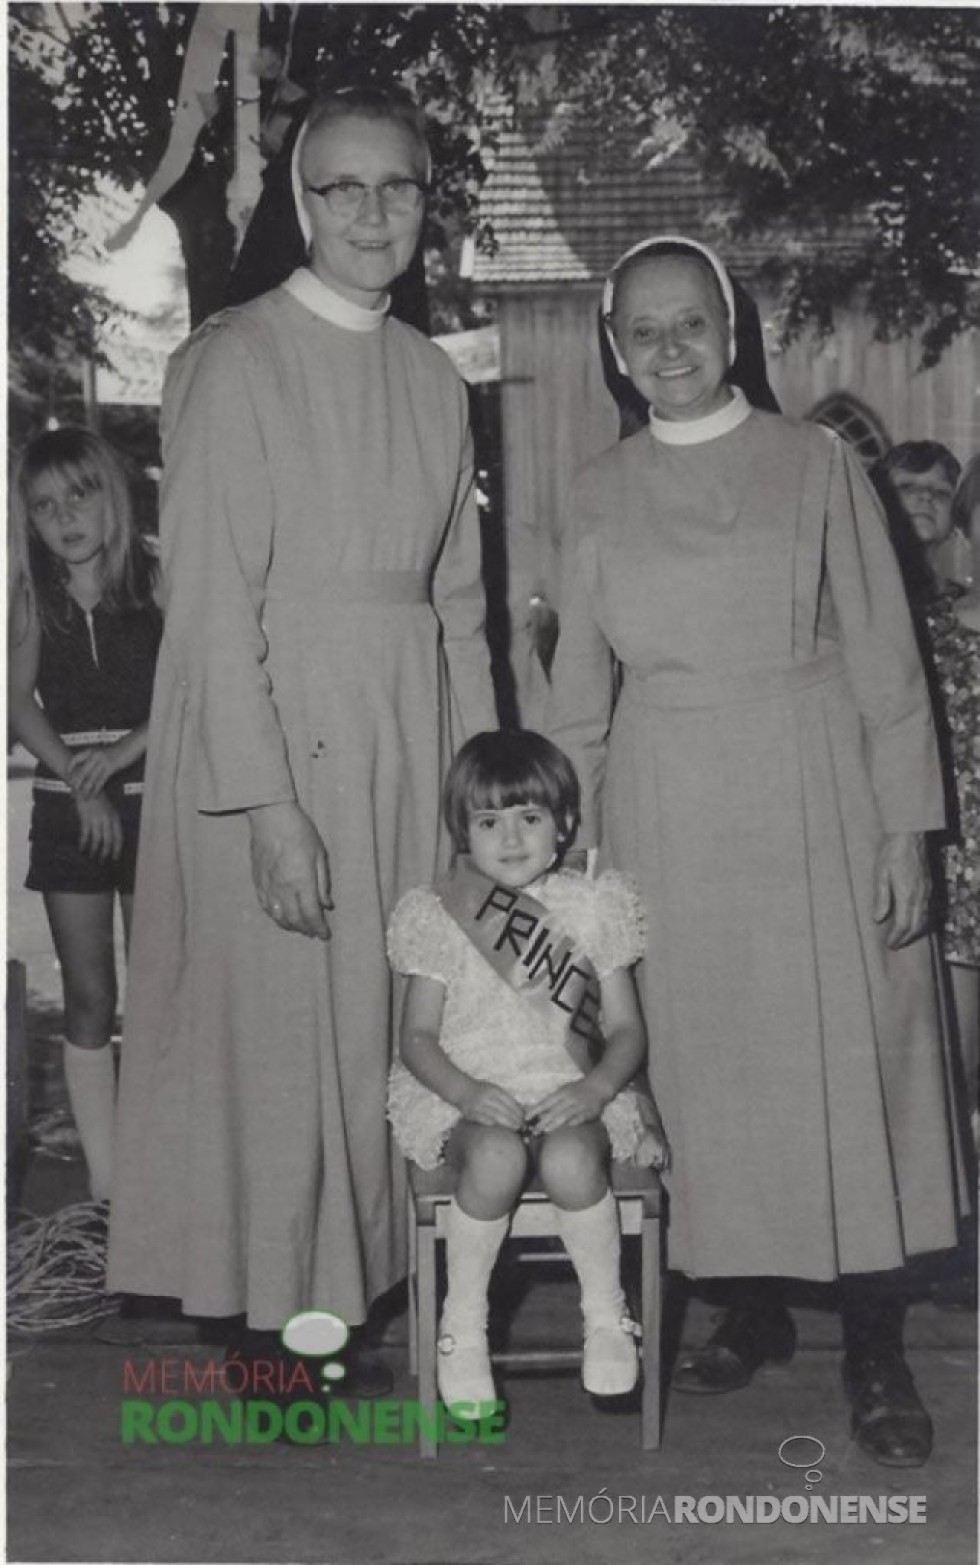 || Irmã Gertildes (d), nascida em maio de 1904, com sua colega Irmã Adelhard, num evento na cidade de Marechal Cândido Rondon.
Imagem: Acervo Projeto Memória Rondonense - FOTO 3 - 